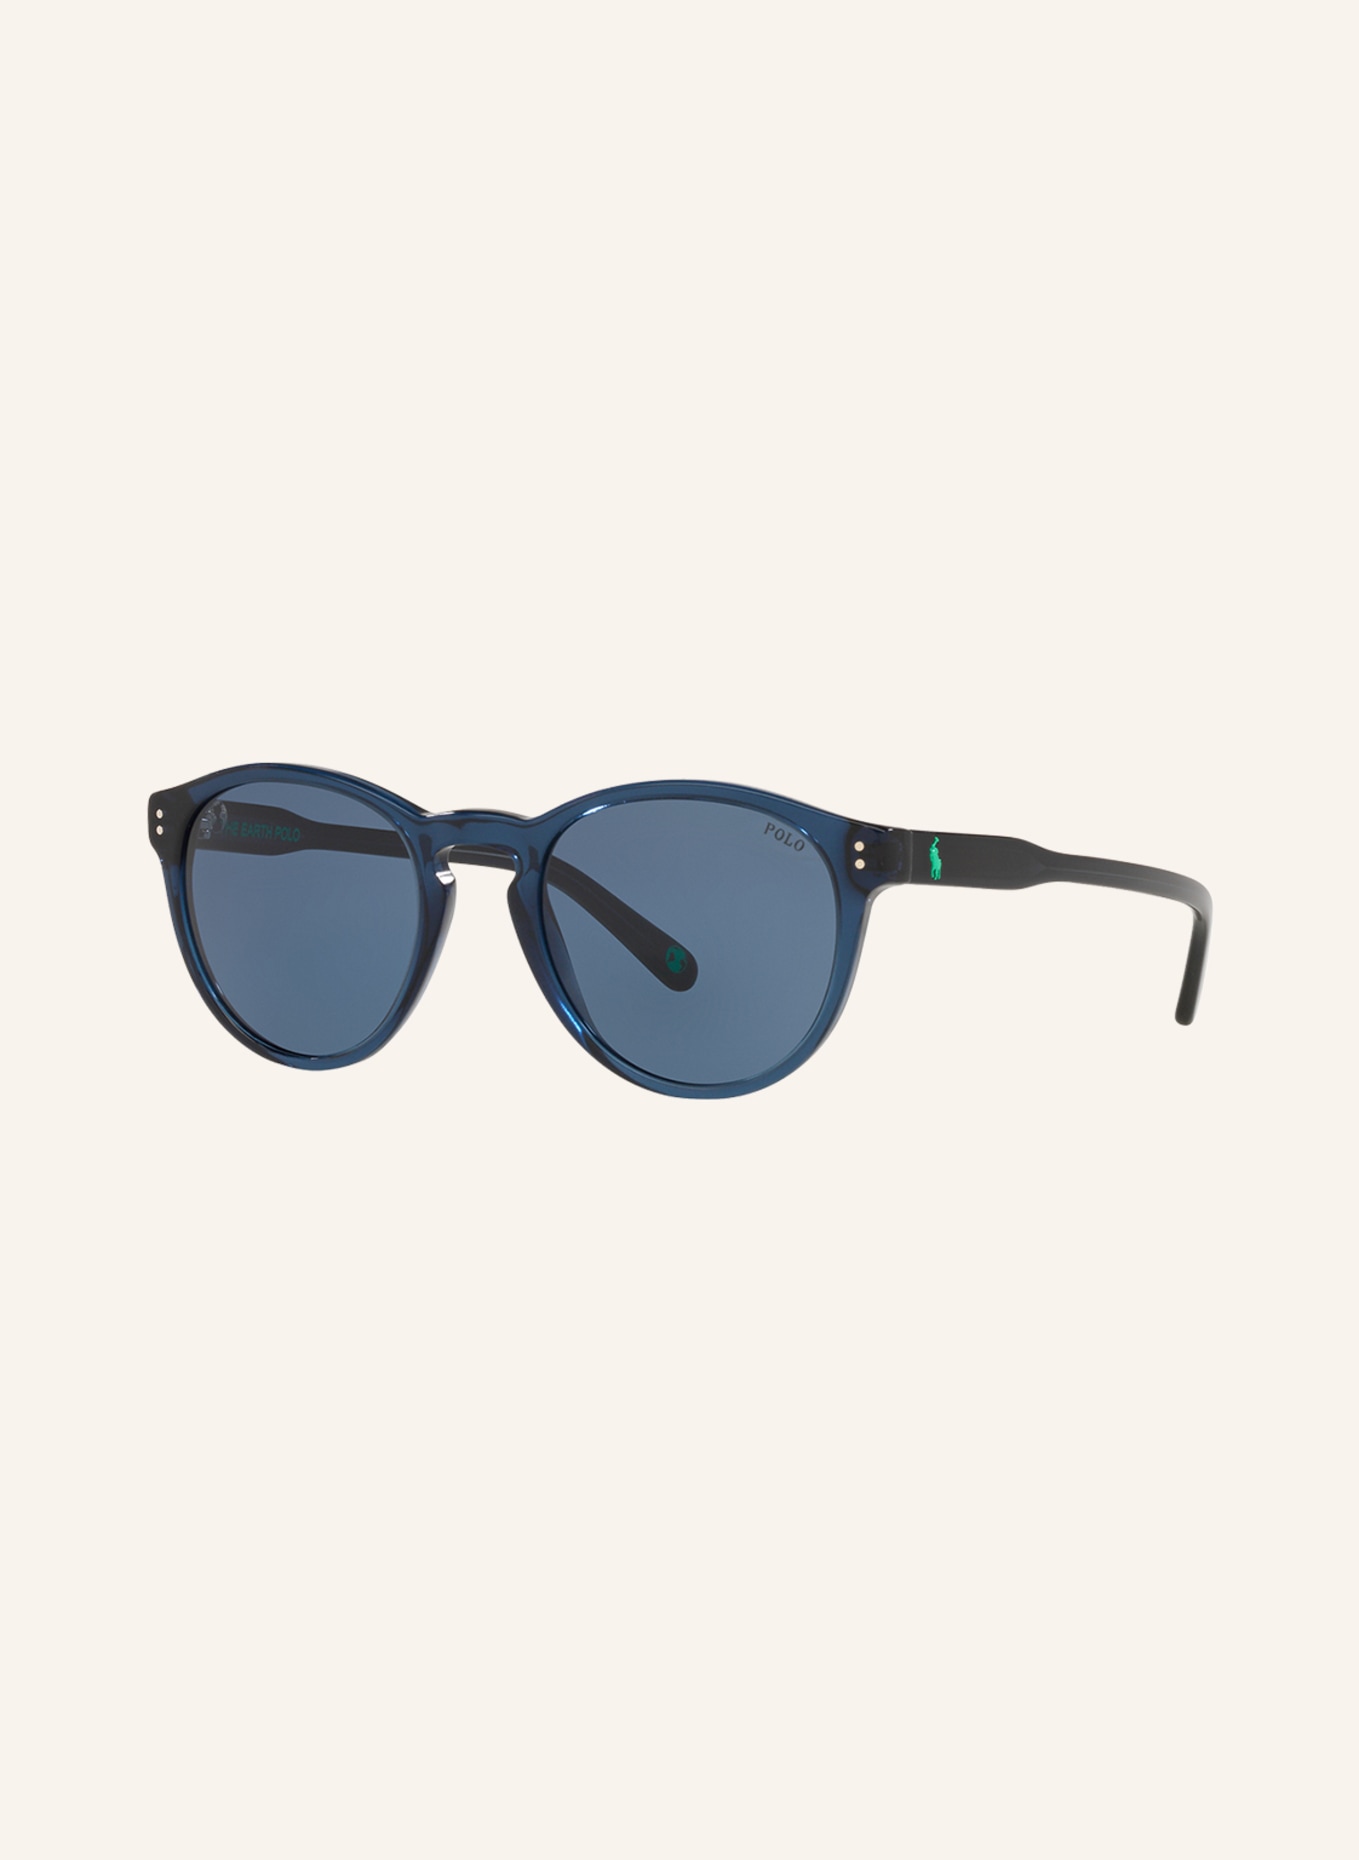 POLO RALPH LAUREN Sunglasses PH4172, Color: 595580 - BLUE/BLUE (Image 1)